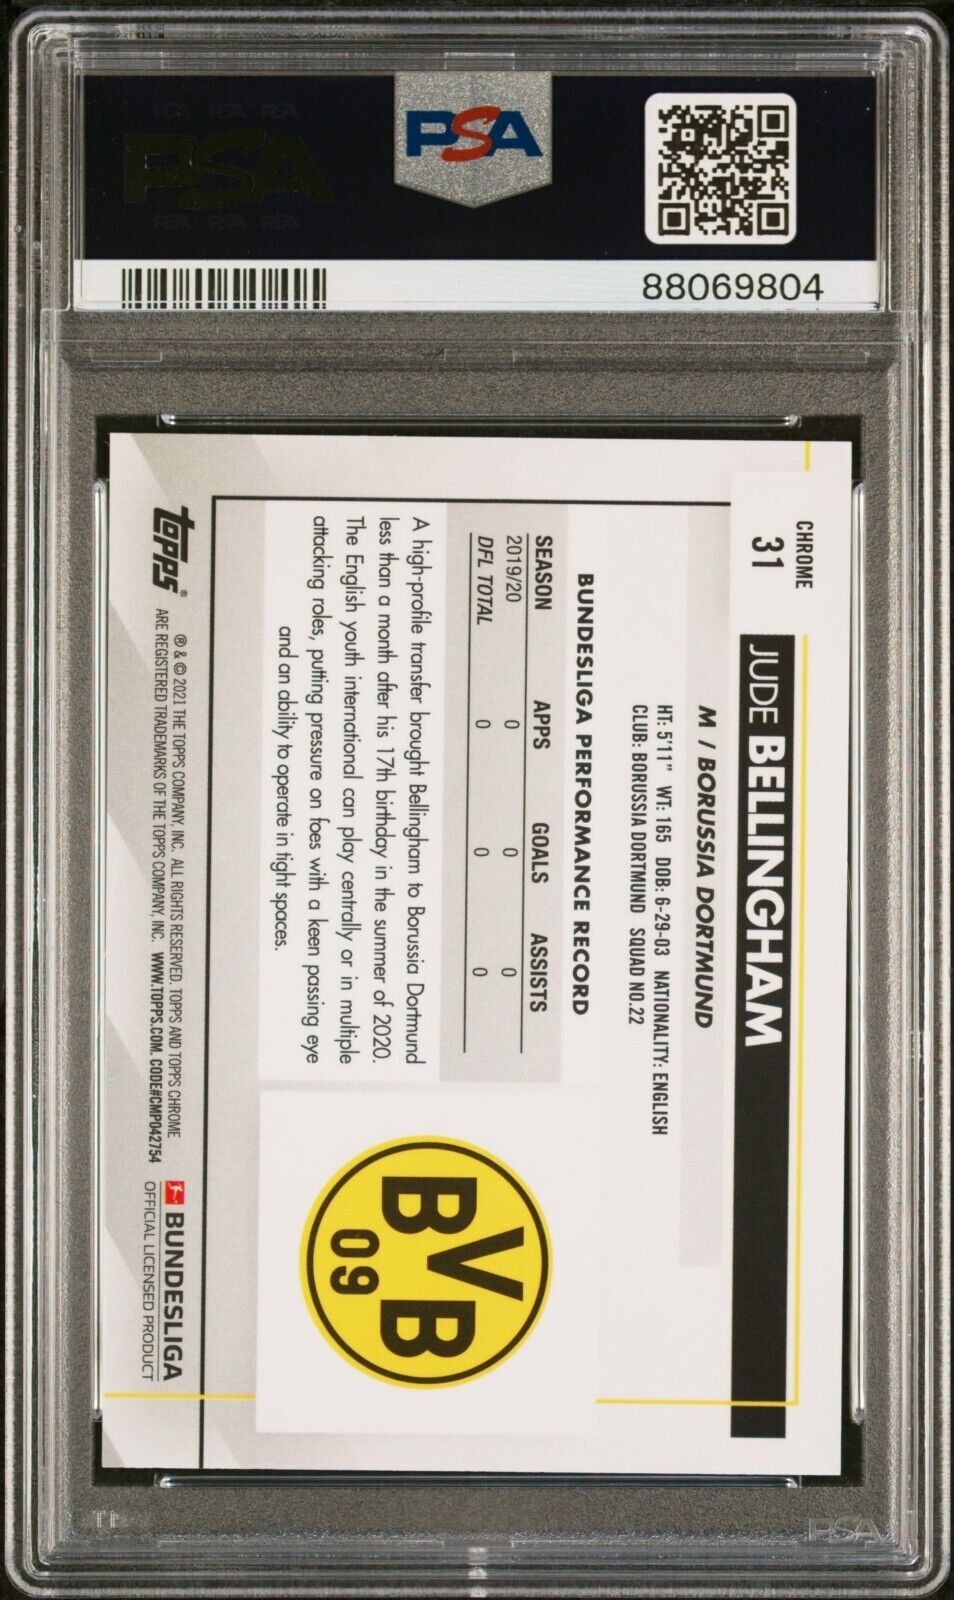 2020/21 Topps Chrome Bundesliga Soccer #31 Jude Bellingham Rookie Card RC PSA 10